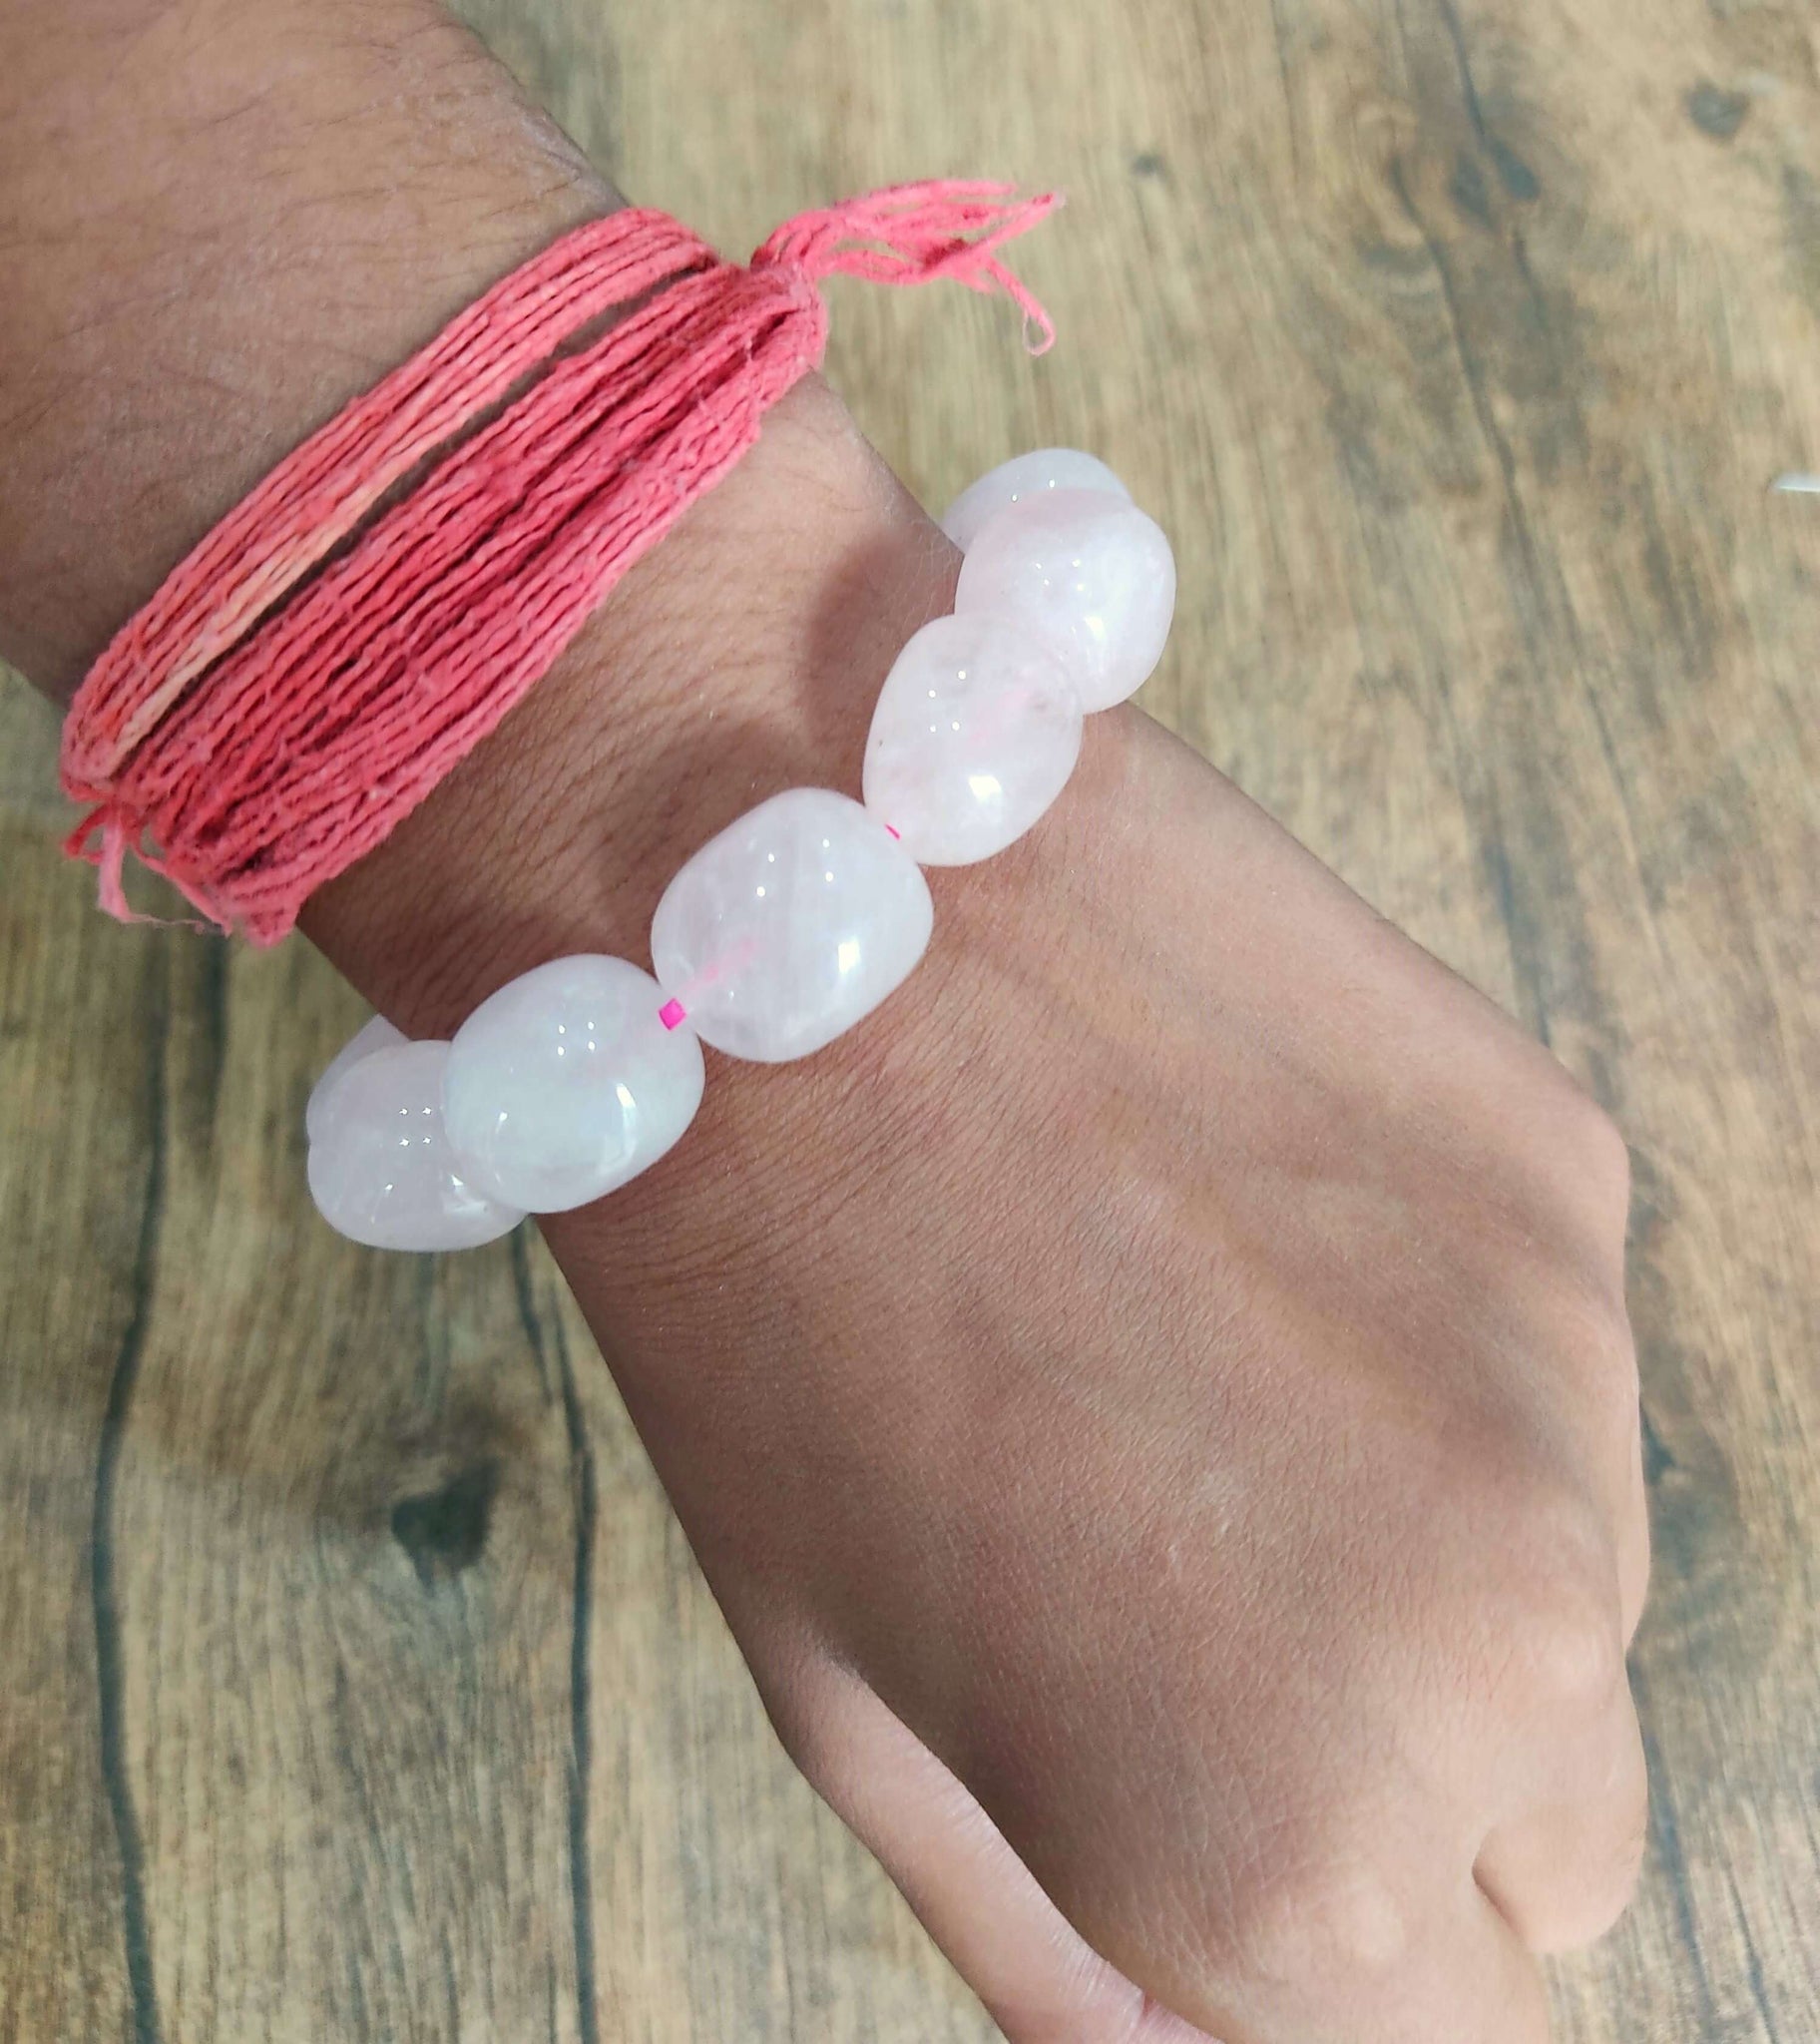 Boutique Pink Crystal Bracelet Assortment